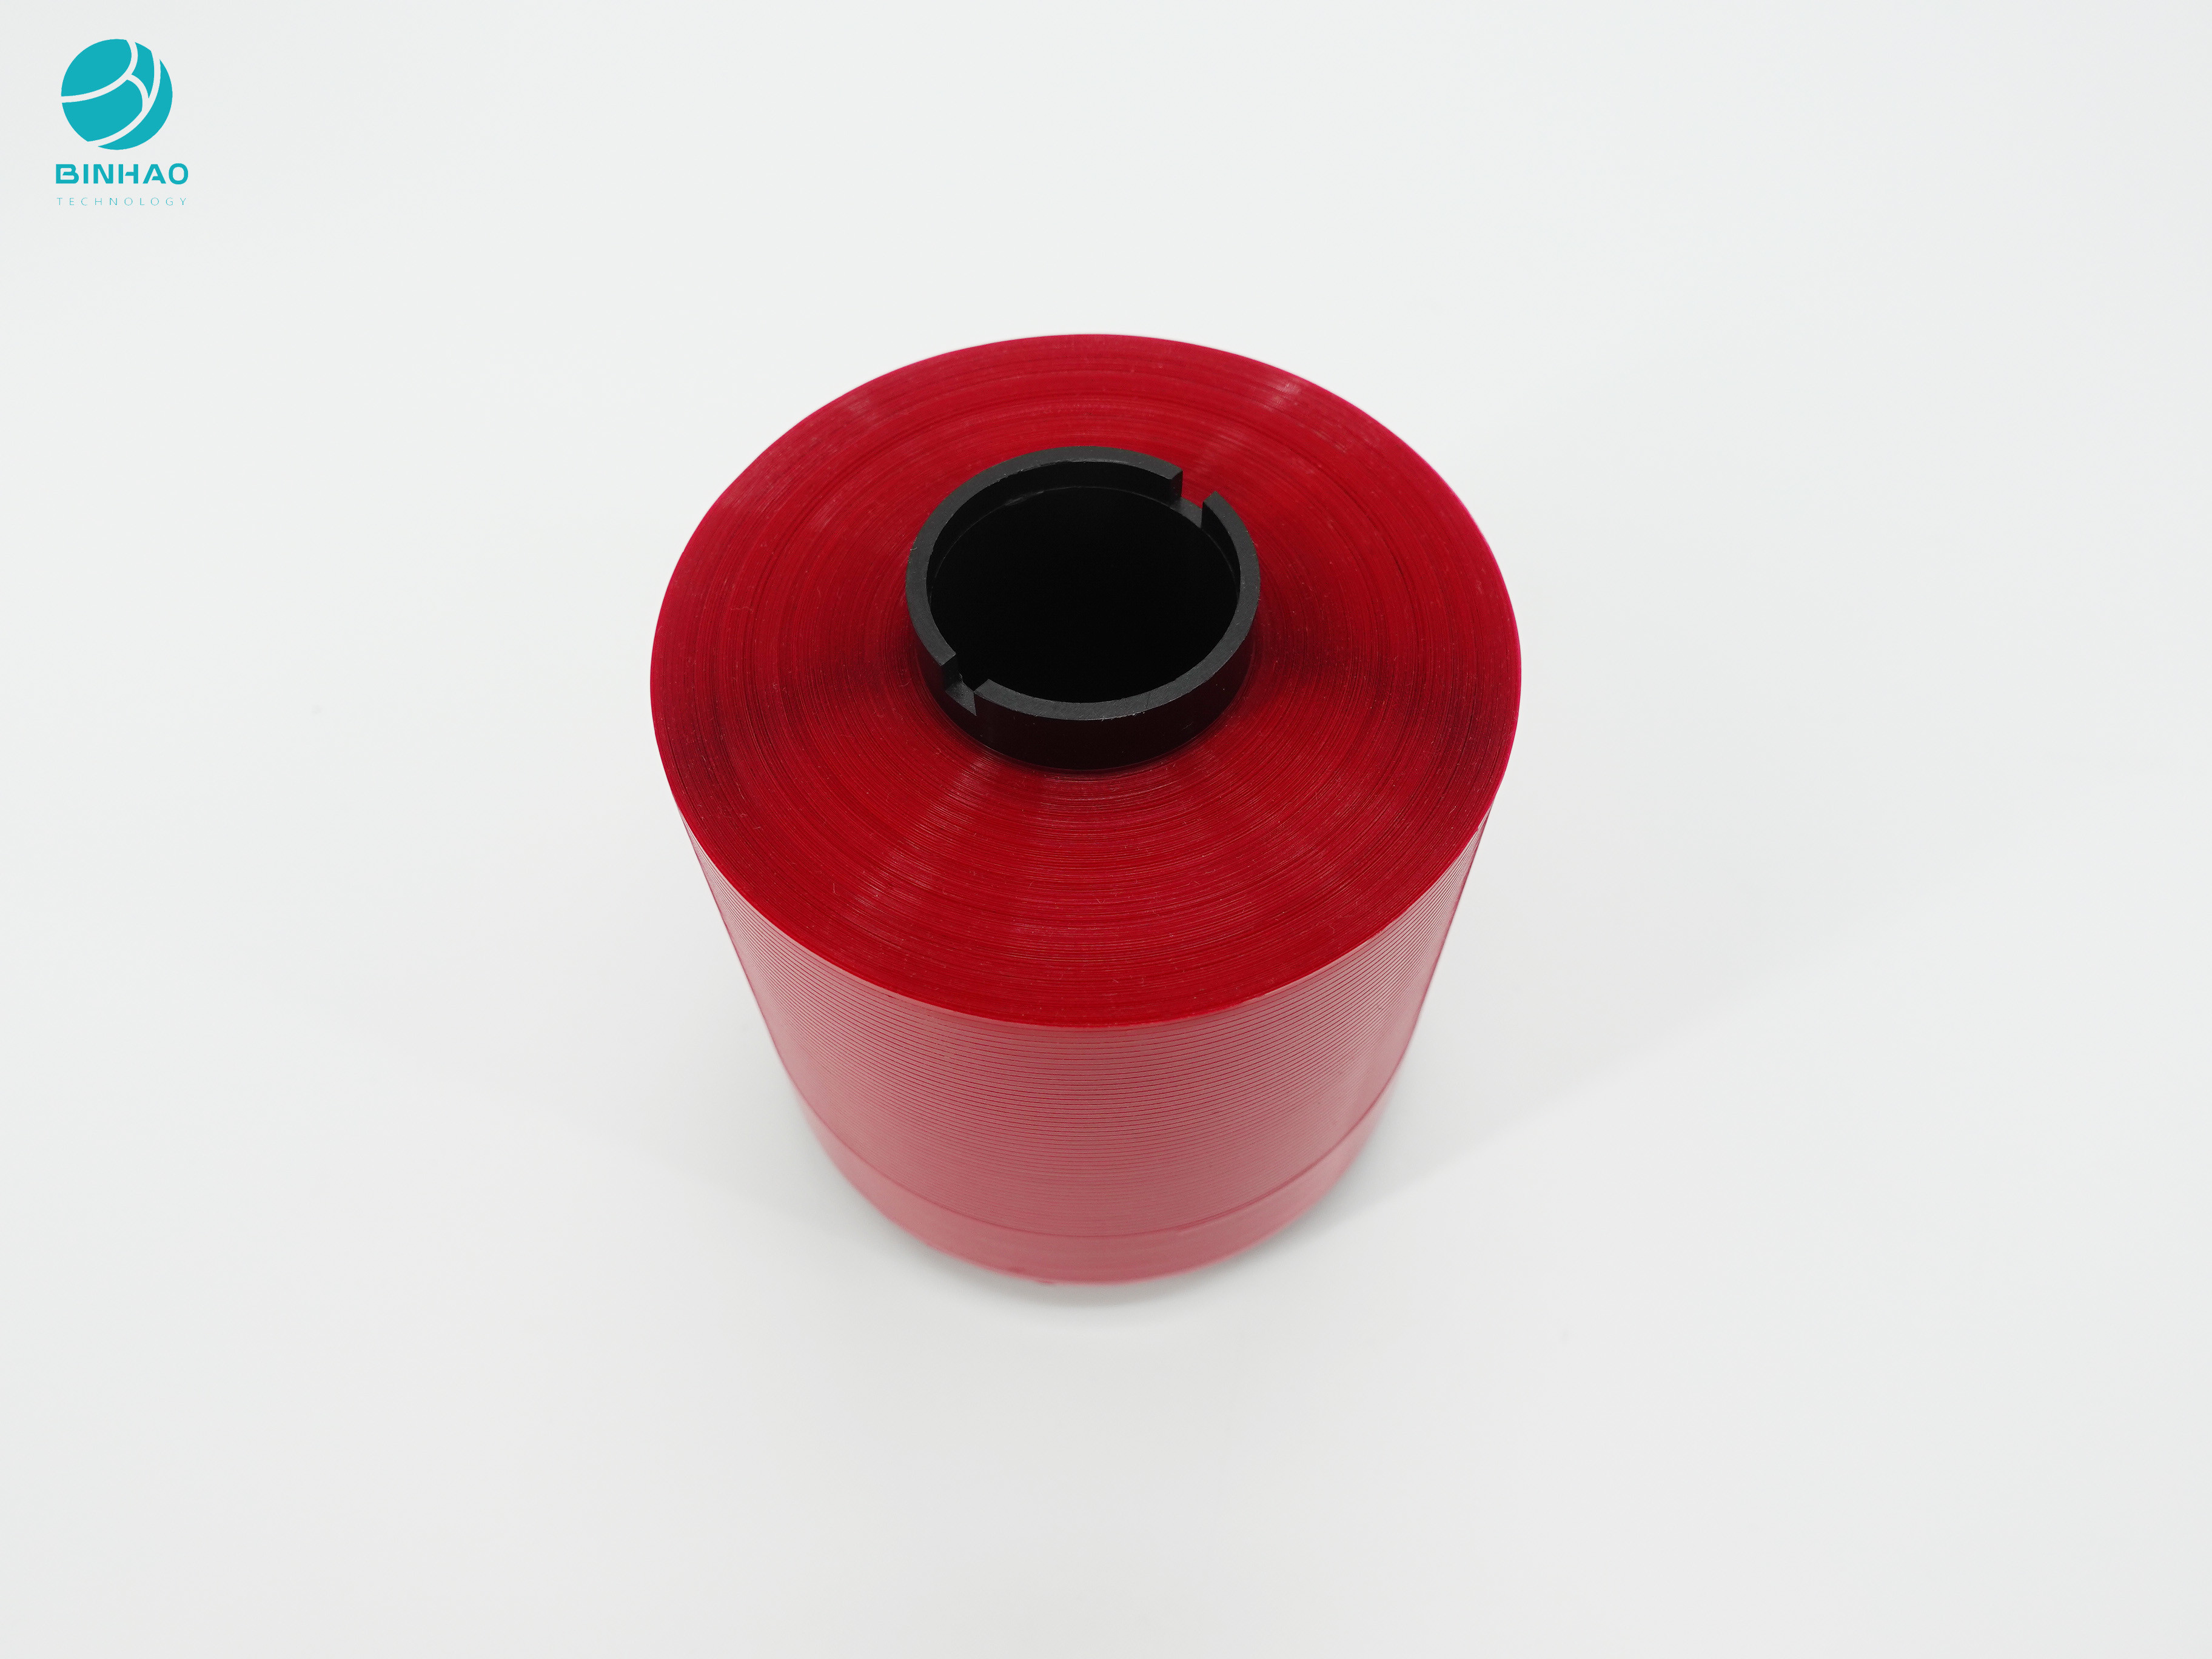 Nastro adesivo 4mm rosso-cupo della striscia di strappo per l'imballaggio cosmetico del contenitore di sigaretta